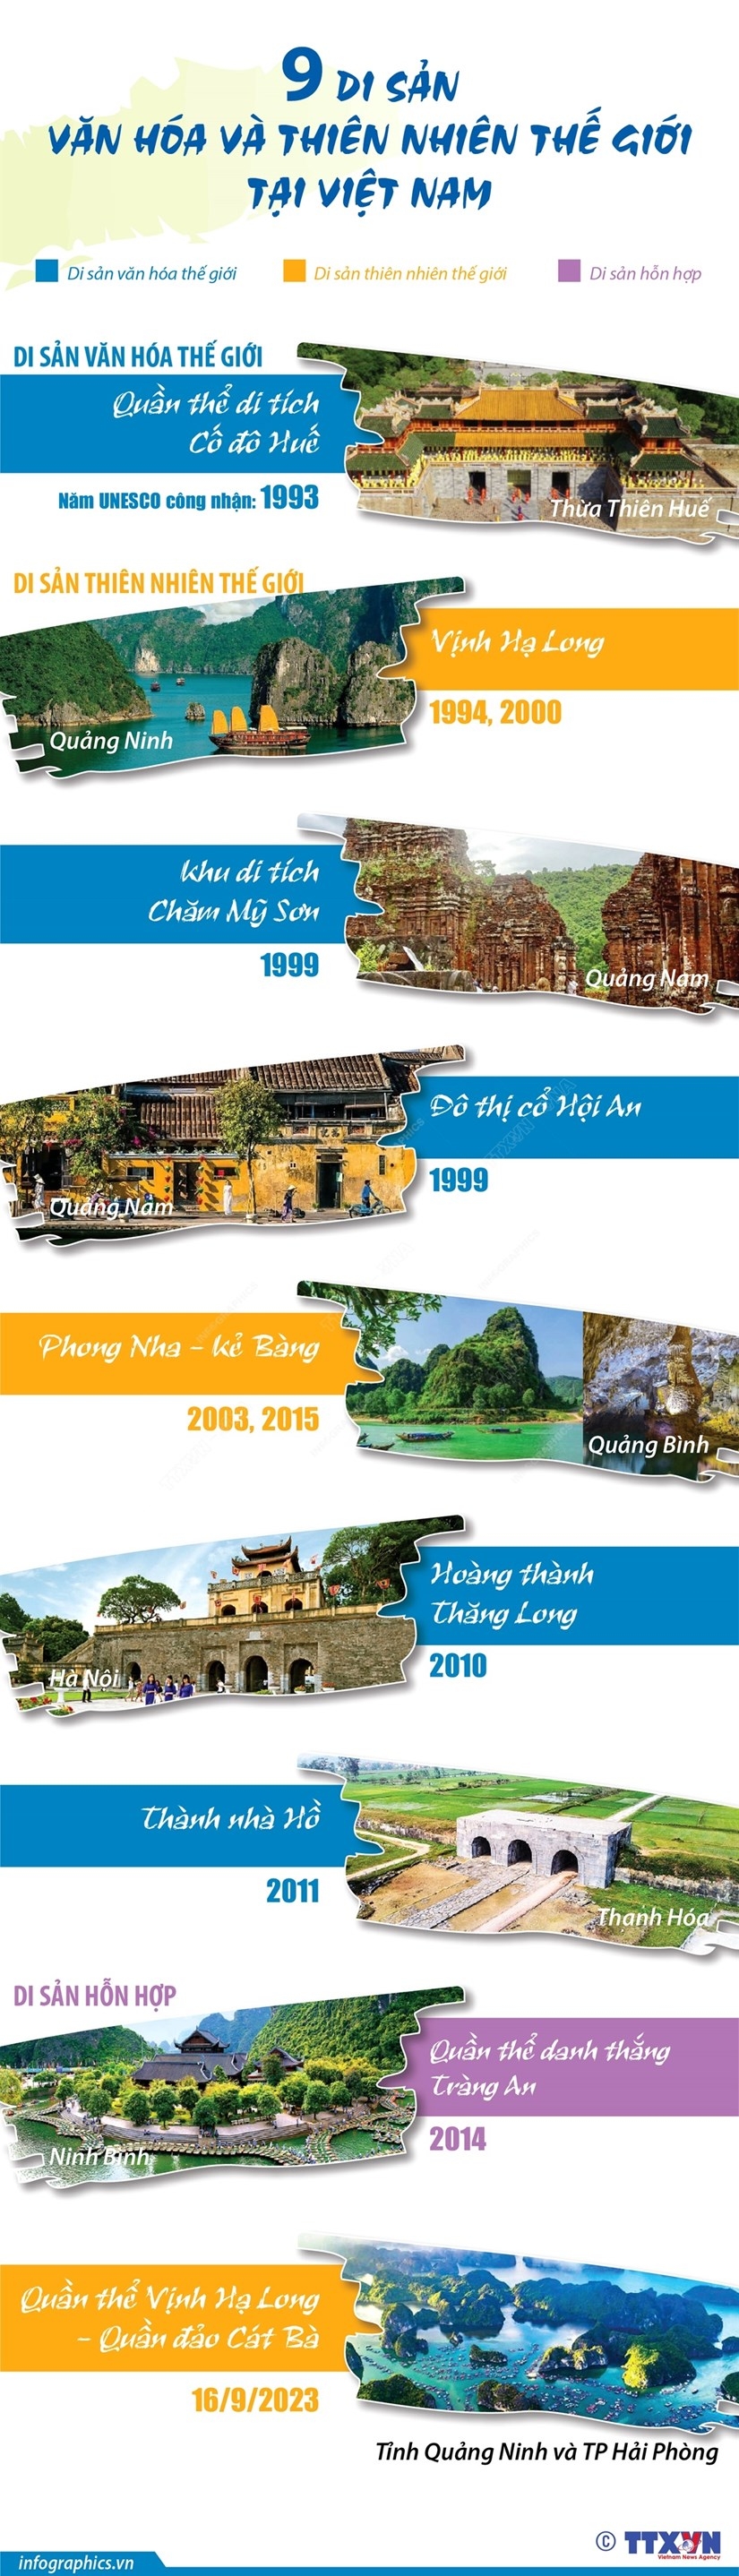 Chín Di sản Văn hóa và Thiên nhiên thế giới ở Việt Nam